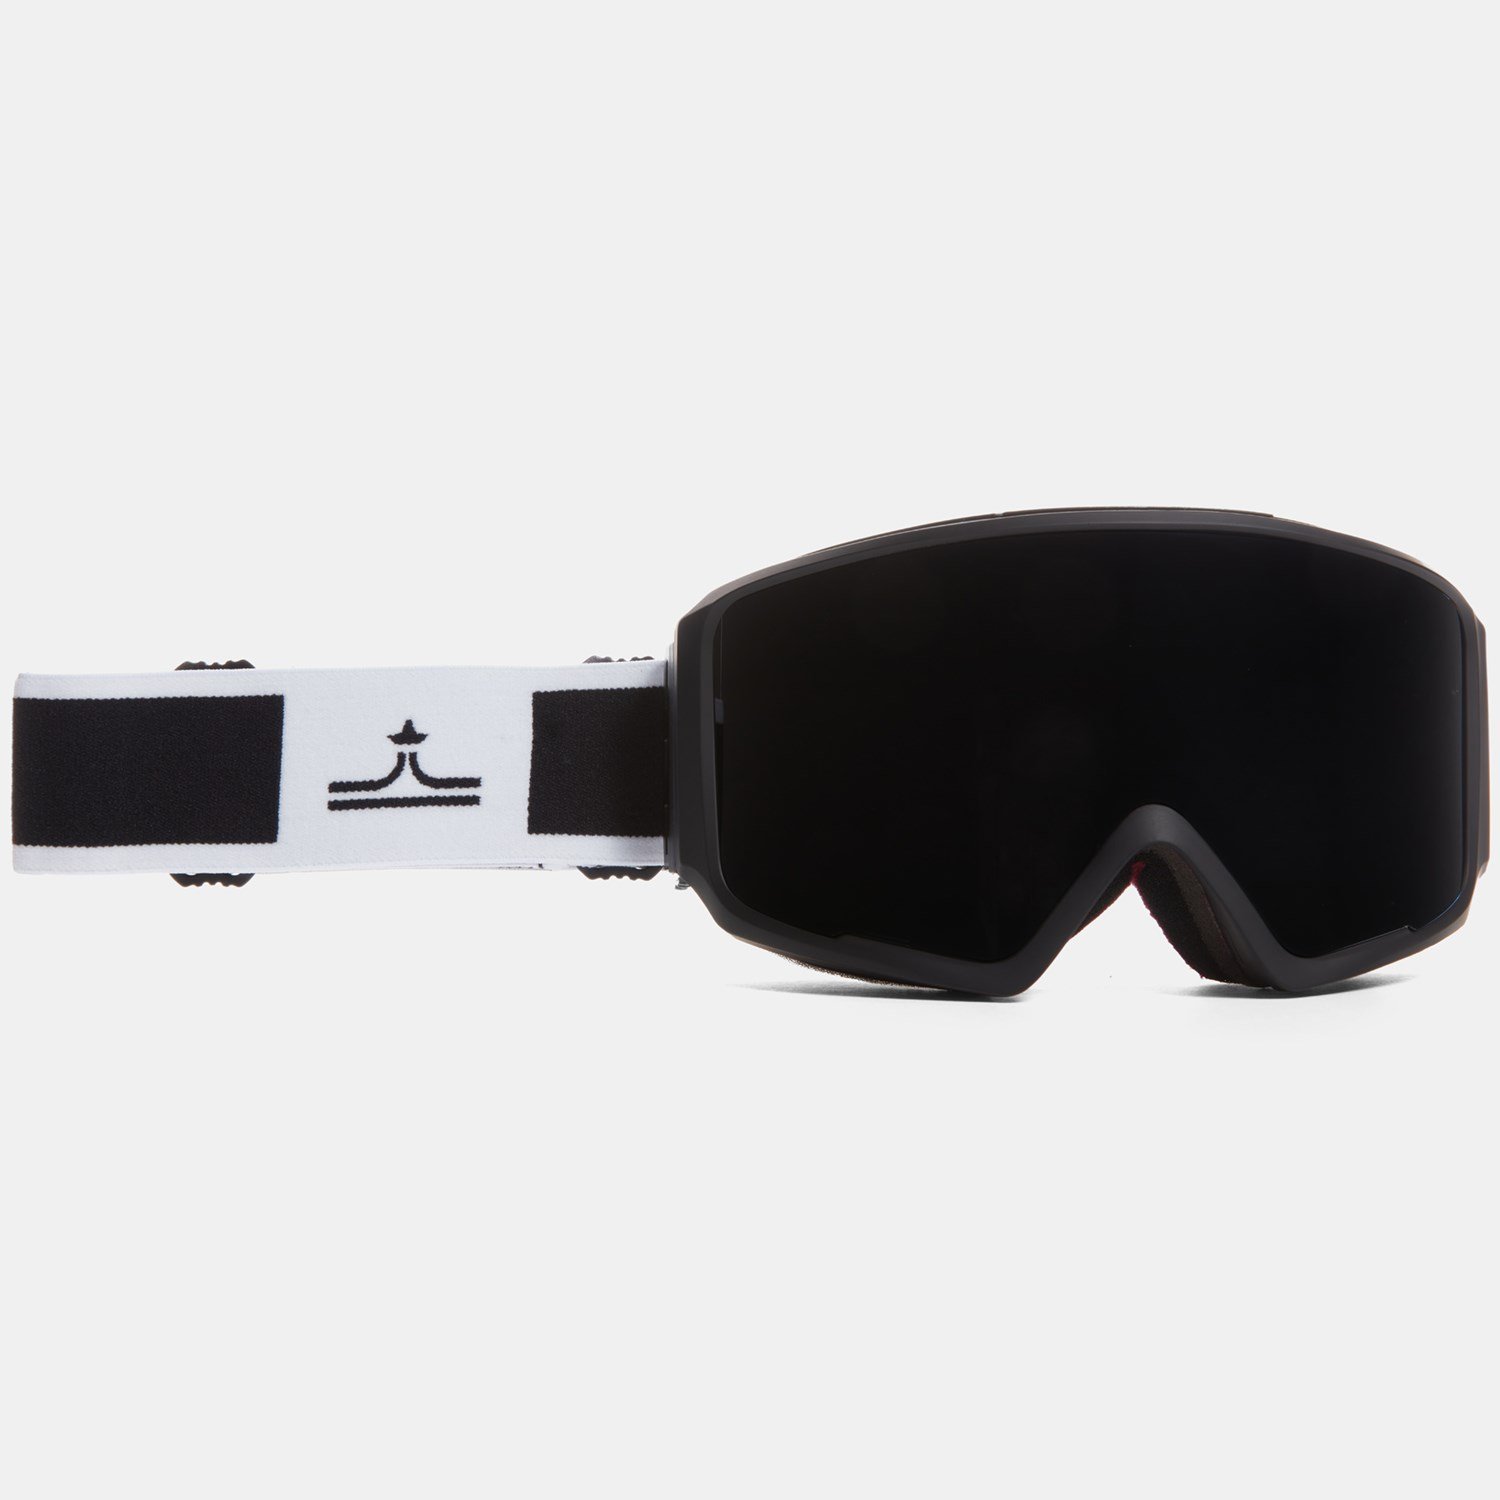 Защитные очки Evo Stone с магнитными линзами, черный защитные очки от брызг защитные очки для работы ветрозащитные пыленепроницаемые защитные очки оправа с оптическими линзами очки для вел